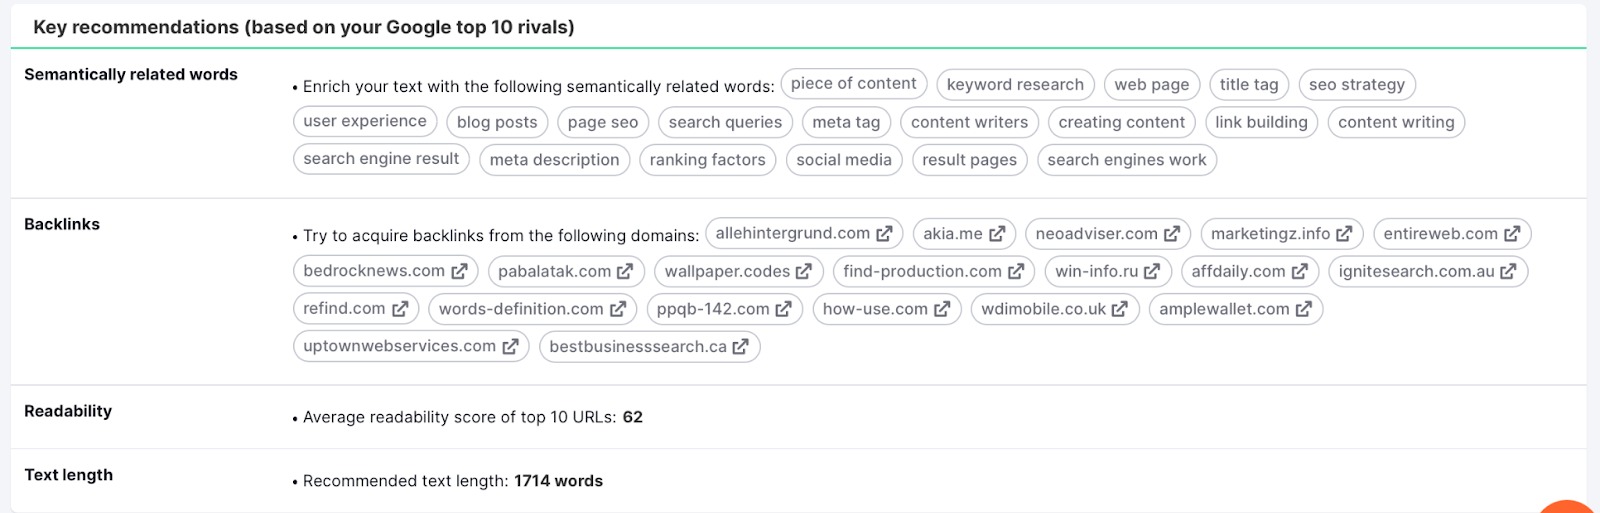 Outil SEO Content Template. Les recommandations clés sont basées sur les 10 premiers concurrents de Google pour les mots sémantiquement liés, les backlinks, la lisibilité et la longueur du texte. 